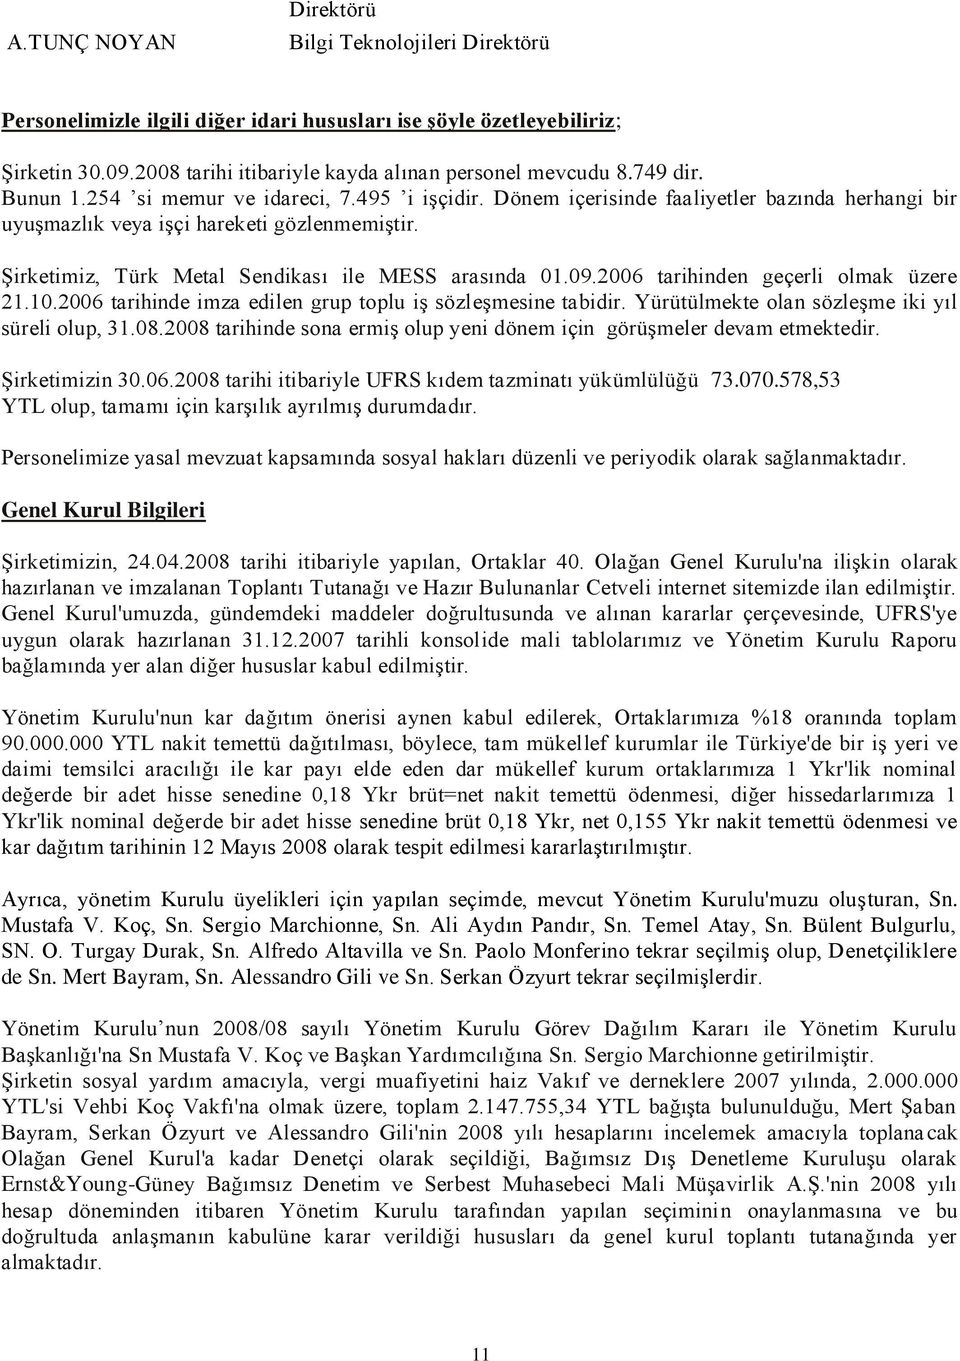 ġirketimiz, Türk Metal Sendikası ile MESS arasında 01.09.2006 tarihinden geçerli olmak üzere 21.10.2006 tarihinde imza edilen grup toplu iģ sözleģmesine tabidir.